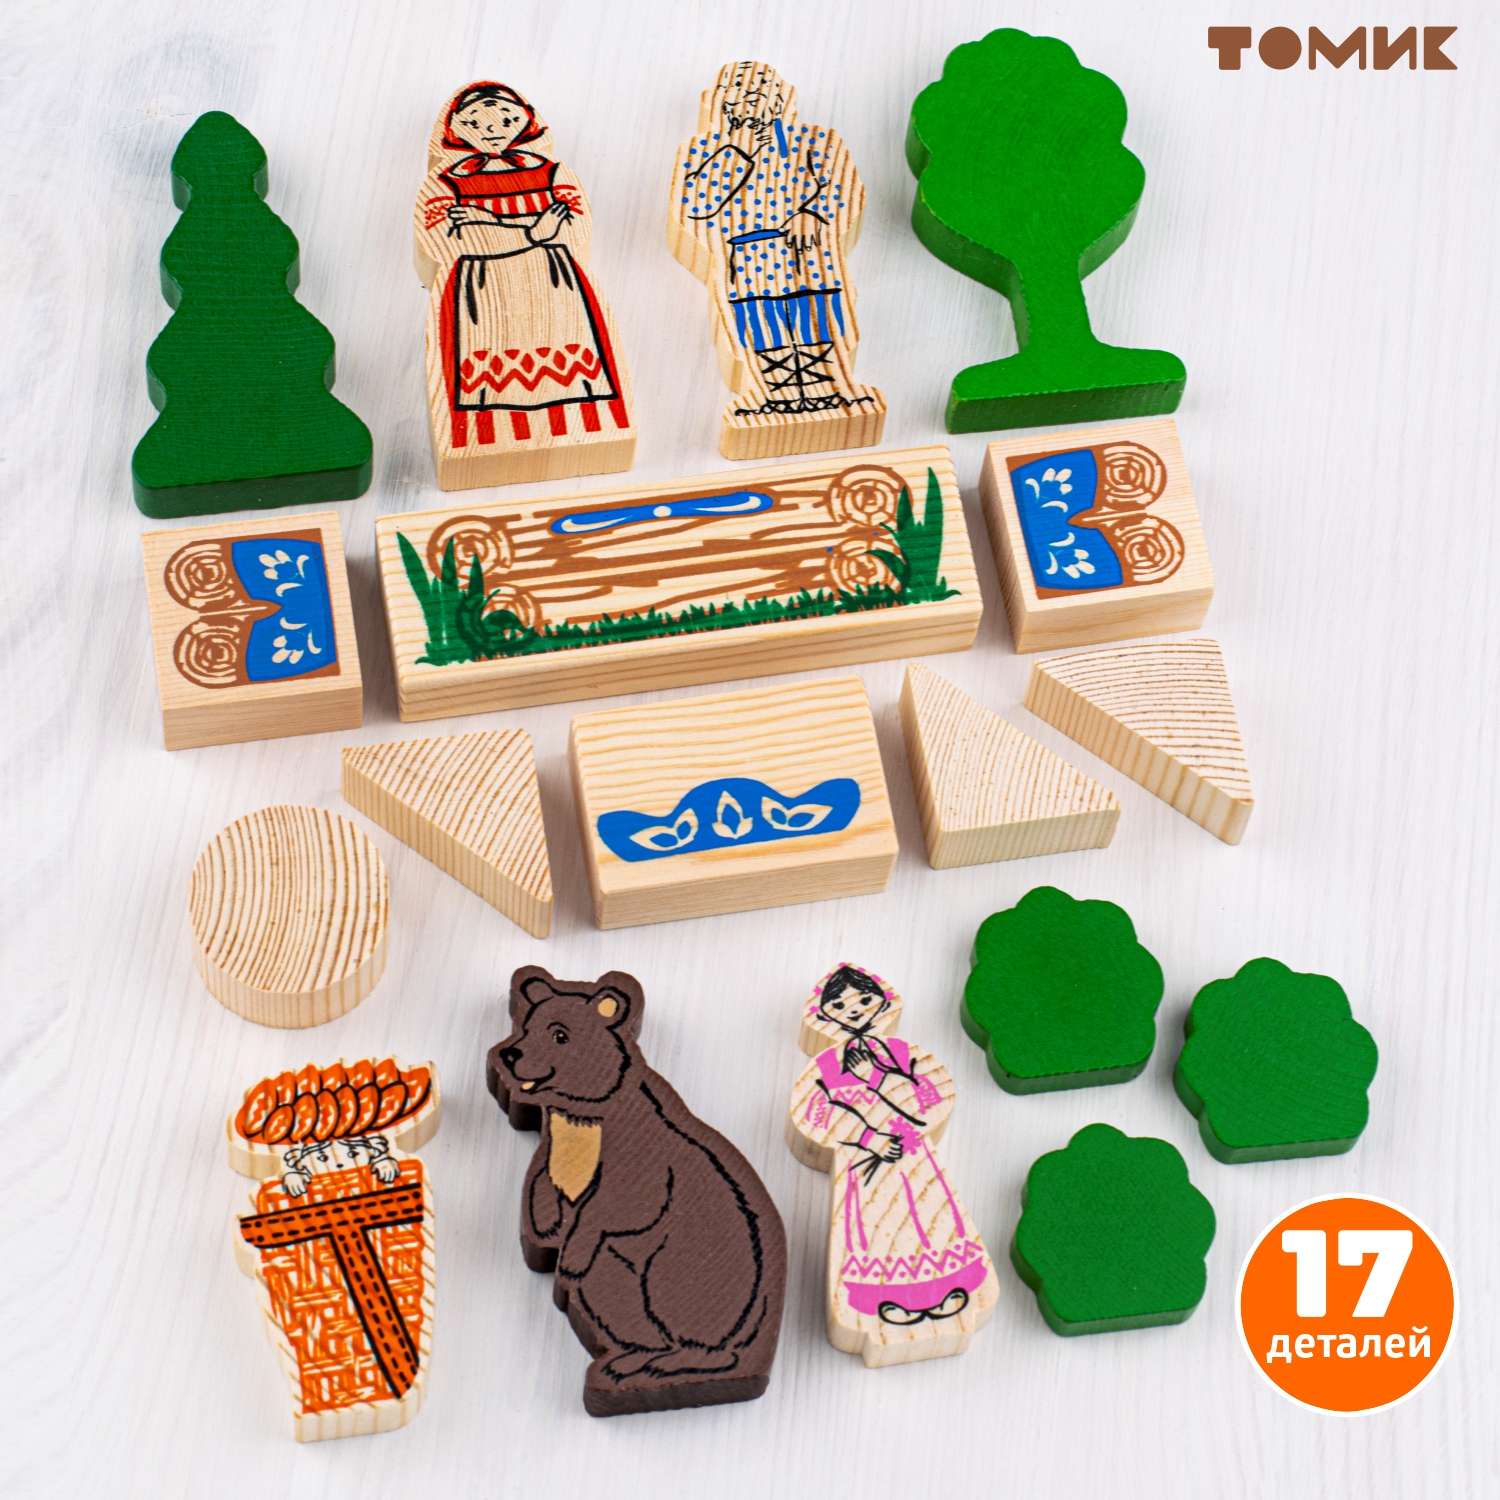 Конструктор детский деревянный Томик сказка Маша и медведь 17 деталей 4534-9 - фото 3